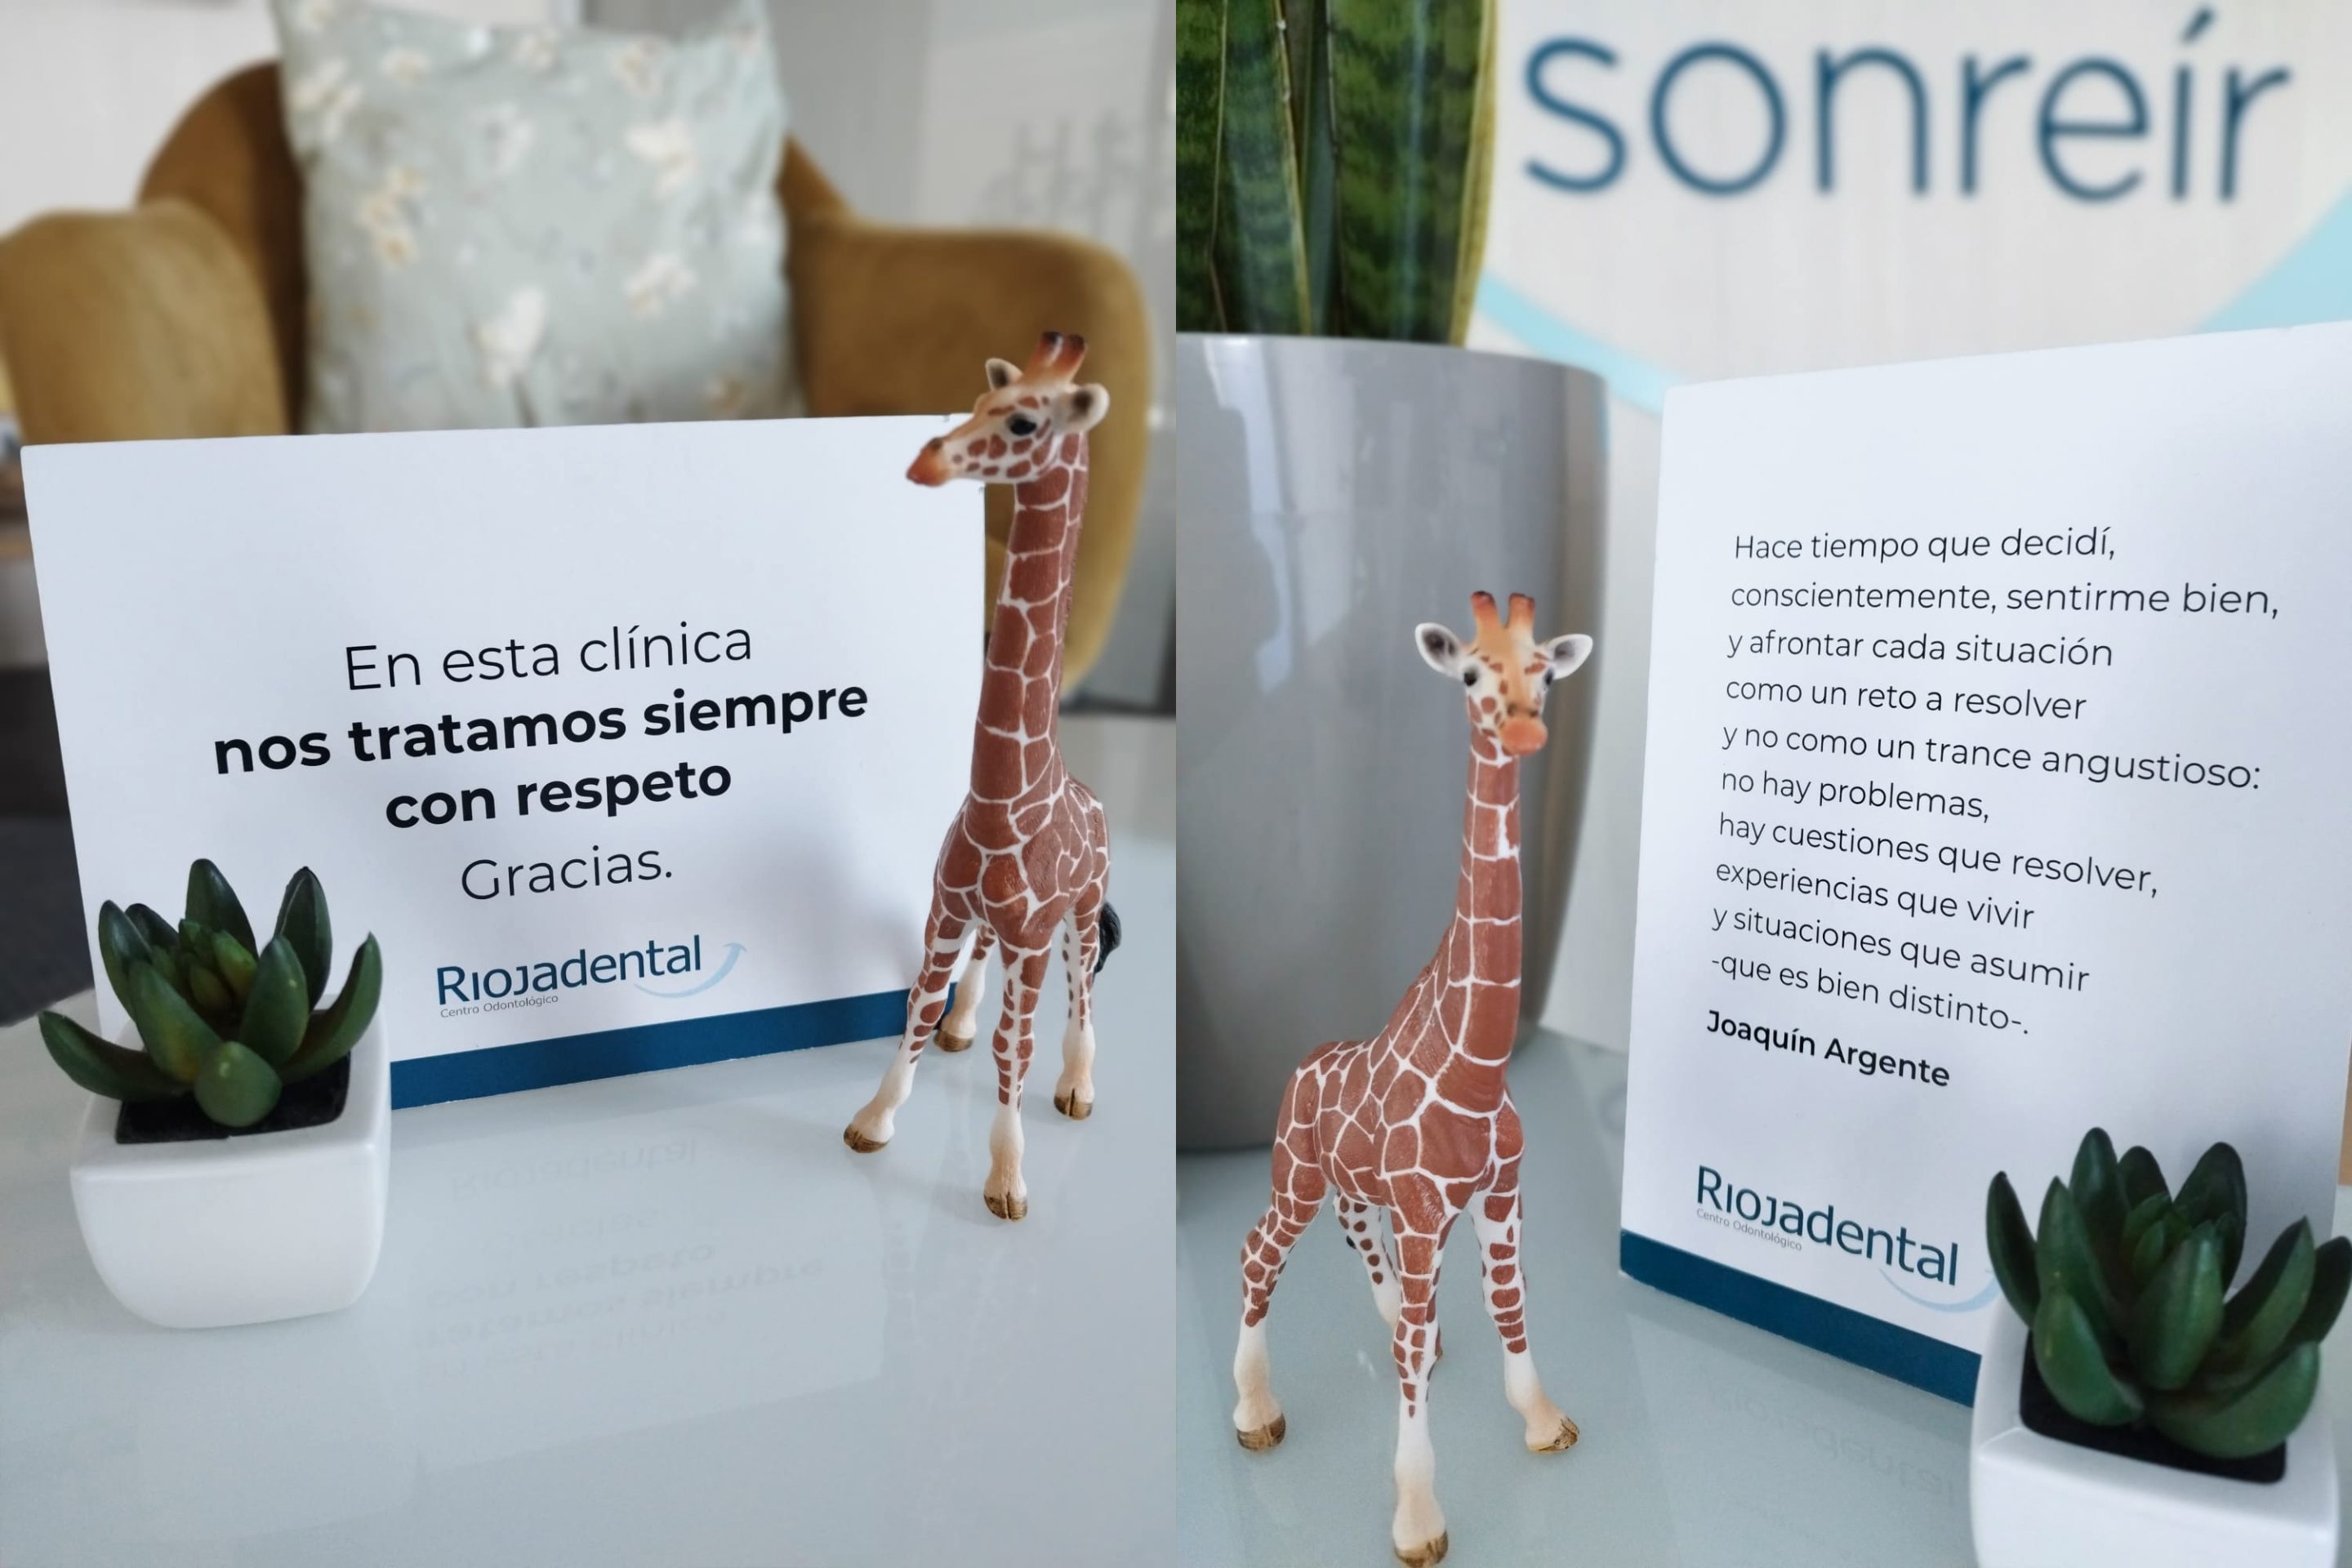 Riojadental blog jirafa programa spillover bienestar mindfullness clinica dental logroño